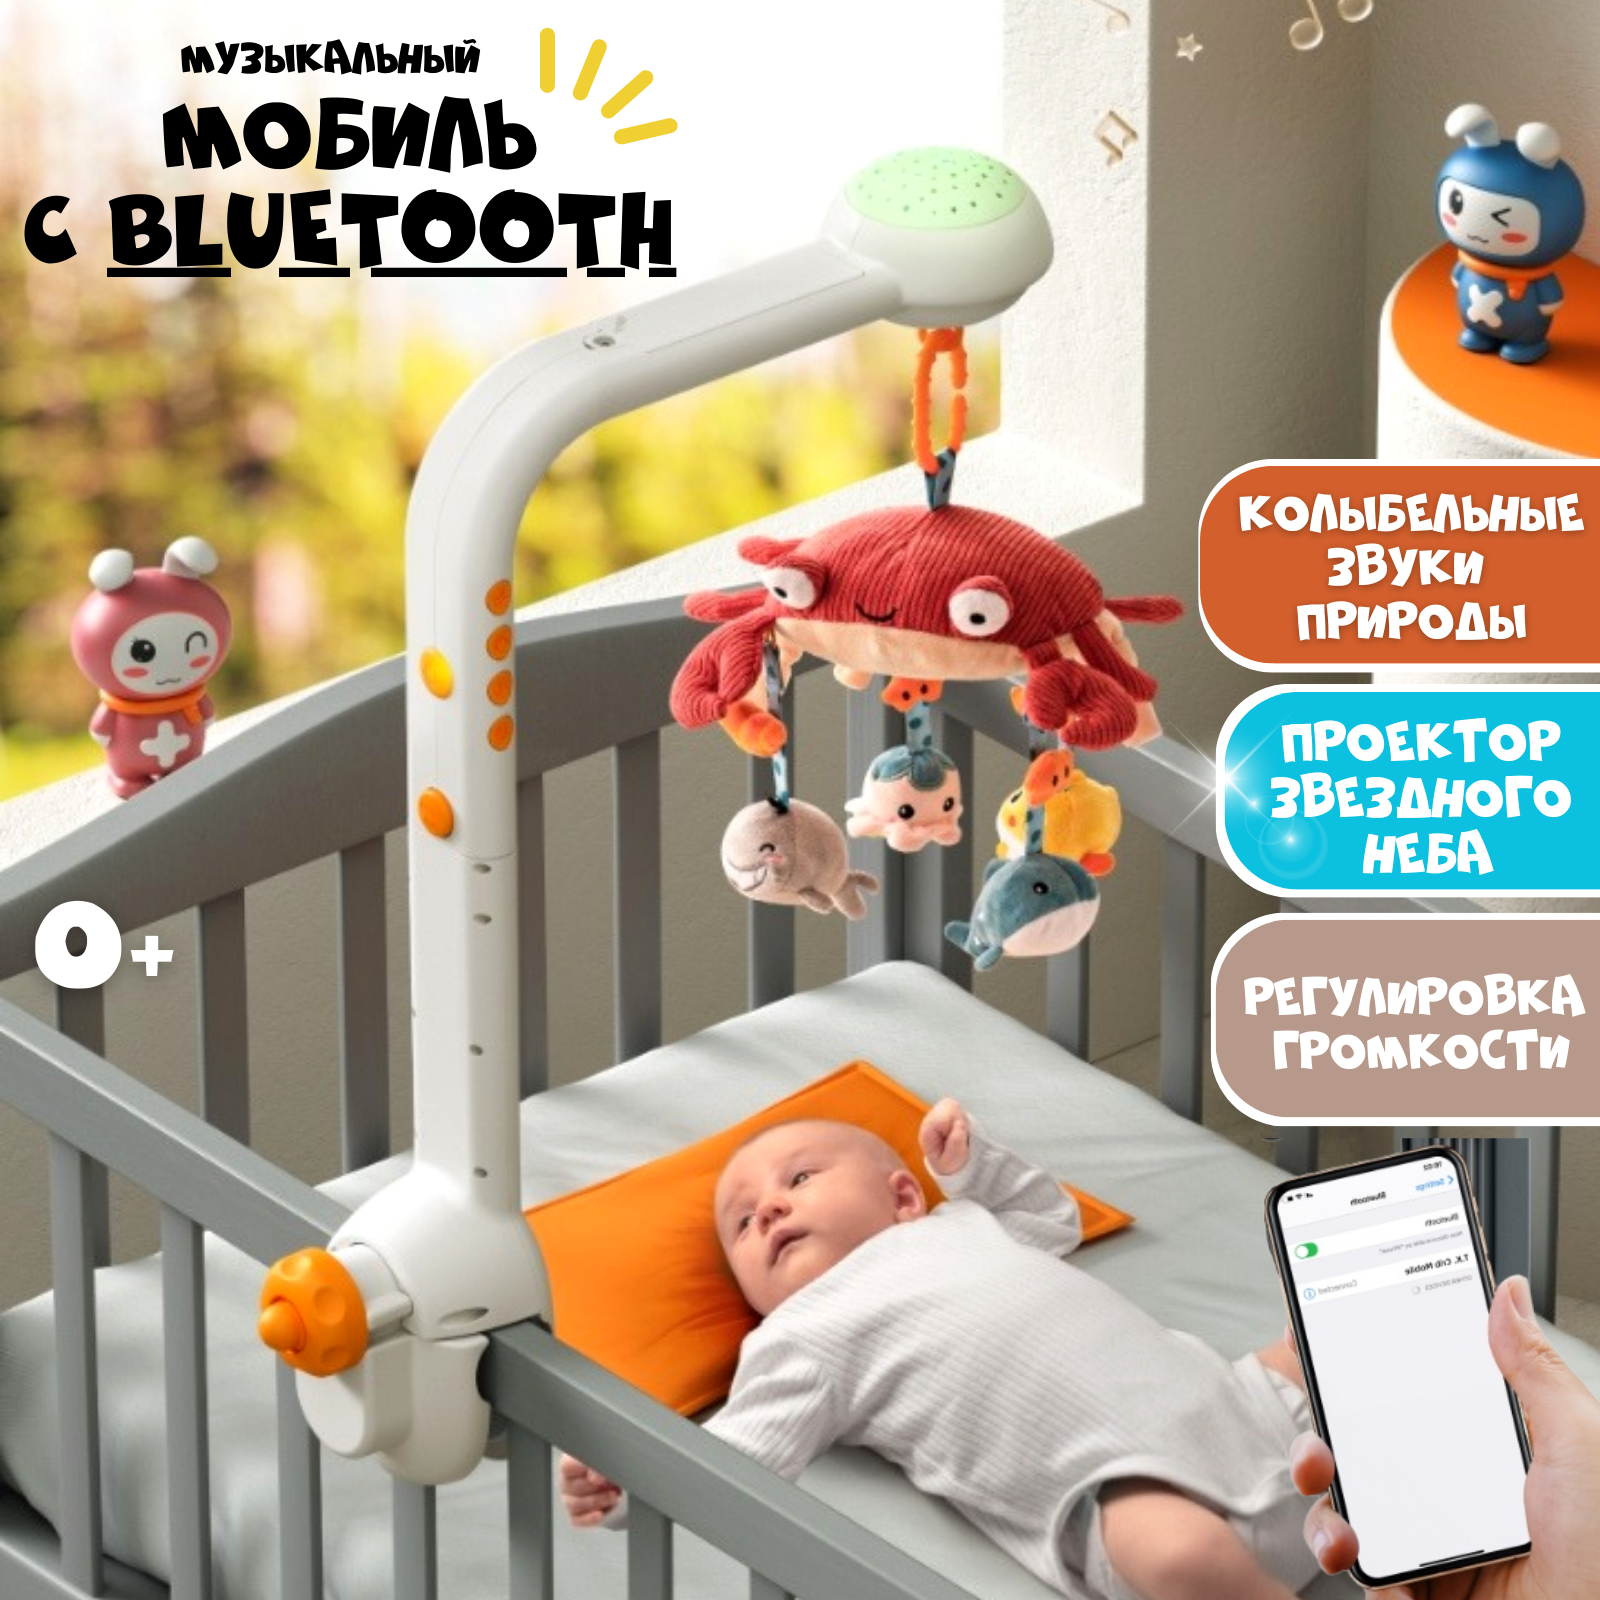 Музыкальный мобиль в кроватку Zeimas с bluetooth регулировкой громкости и проектором звездного неба развивающая игрушка - фото 1